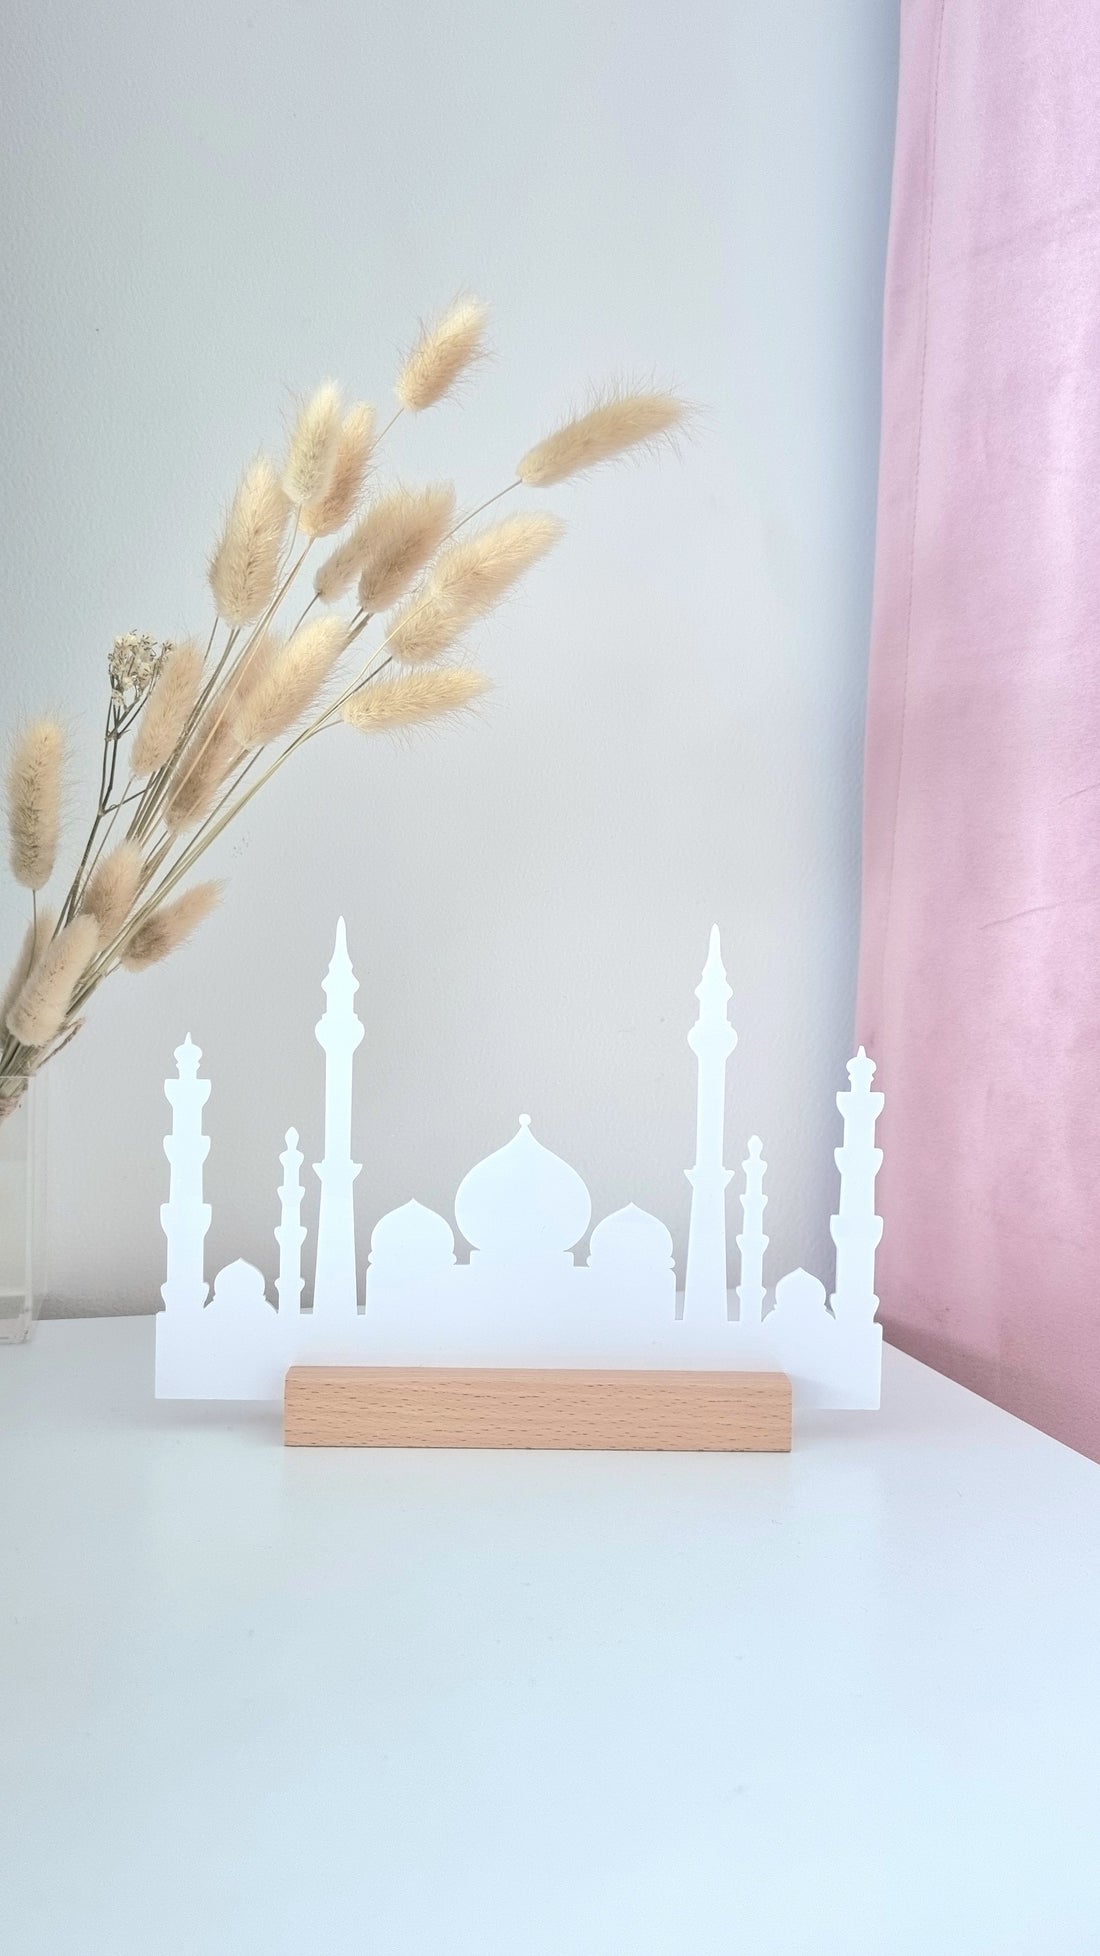 Décoration en forme de mosquée 2 - Acrylique Blanc